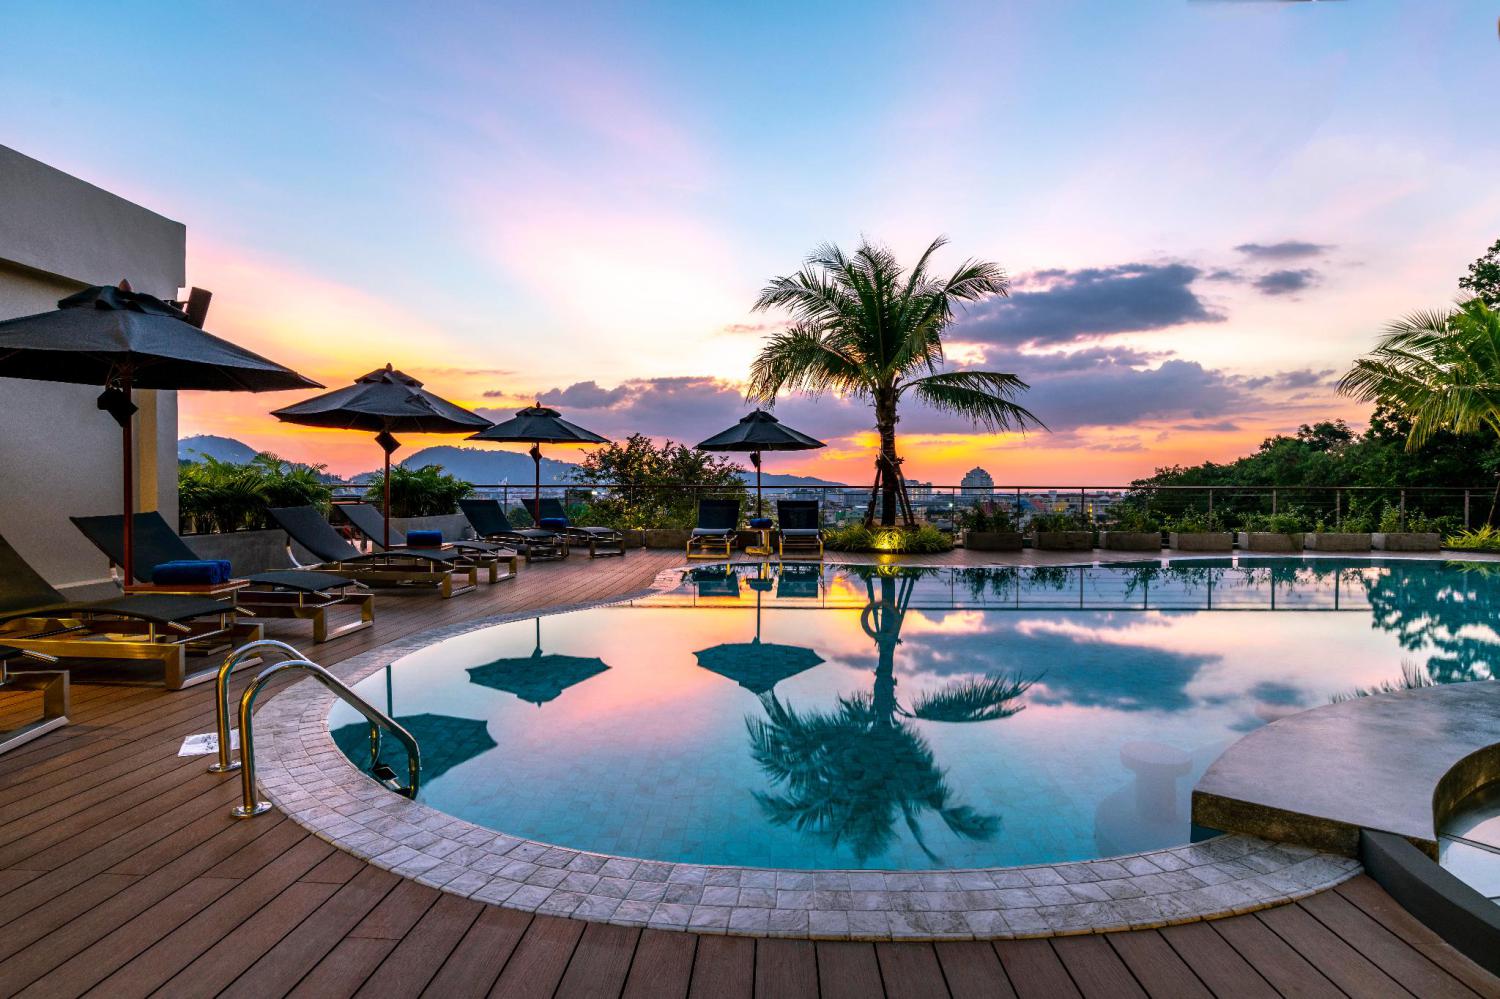 SKYVIEW Resort Phuket Patong Beach - Image 2